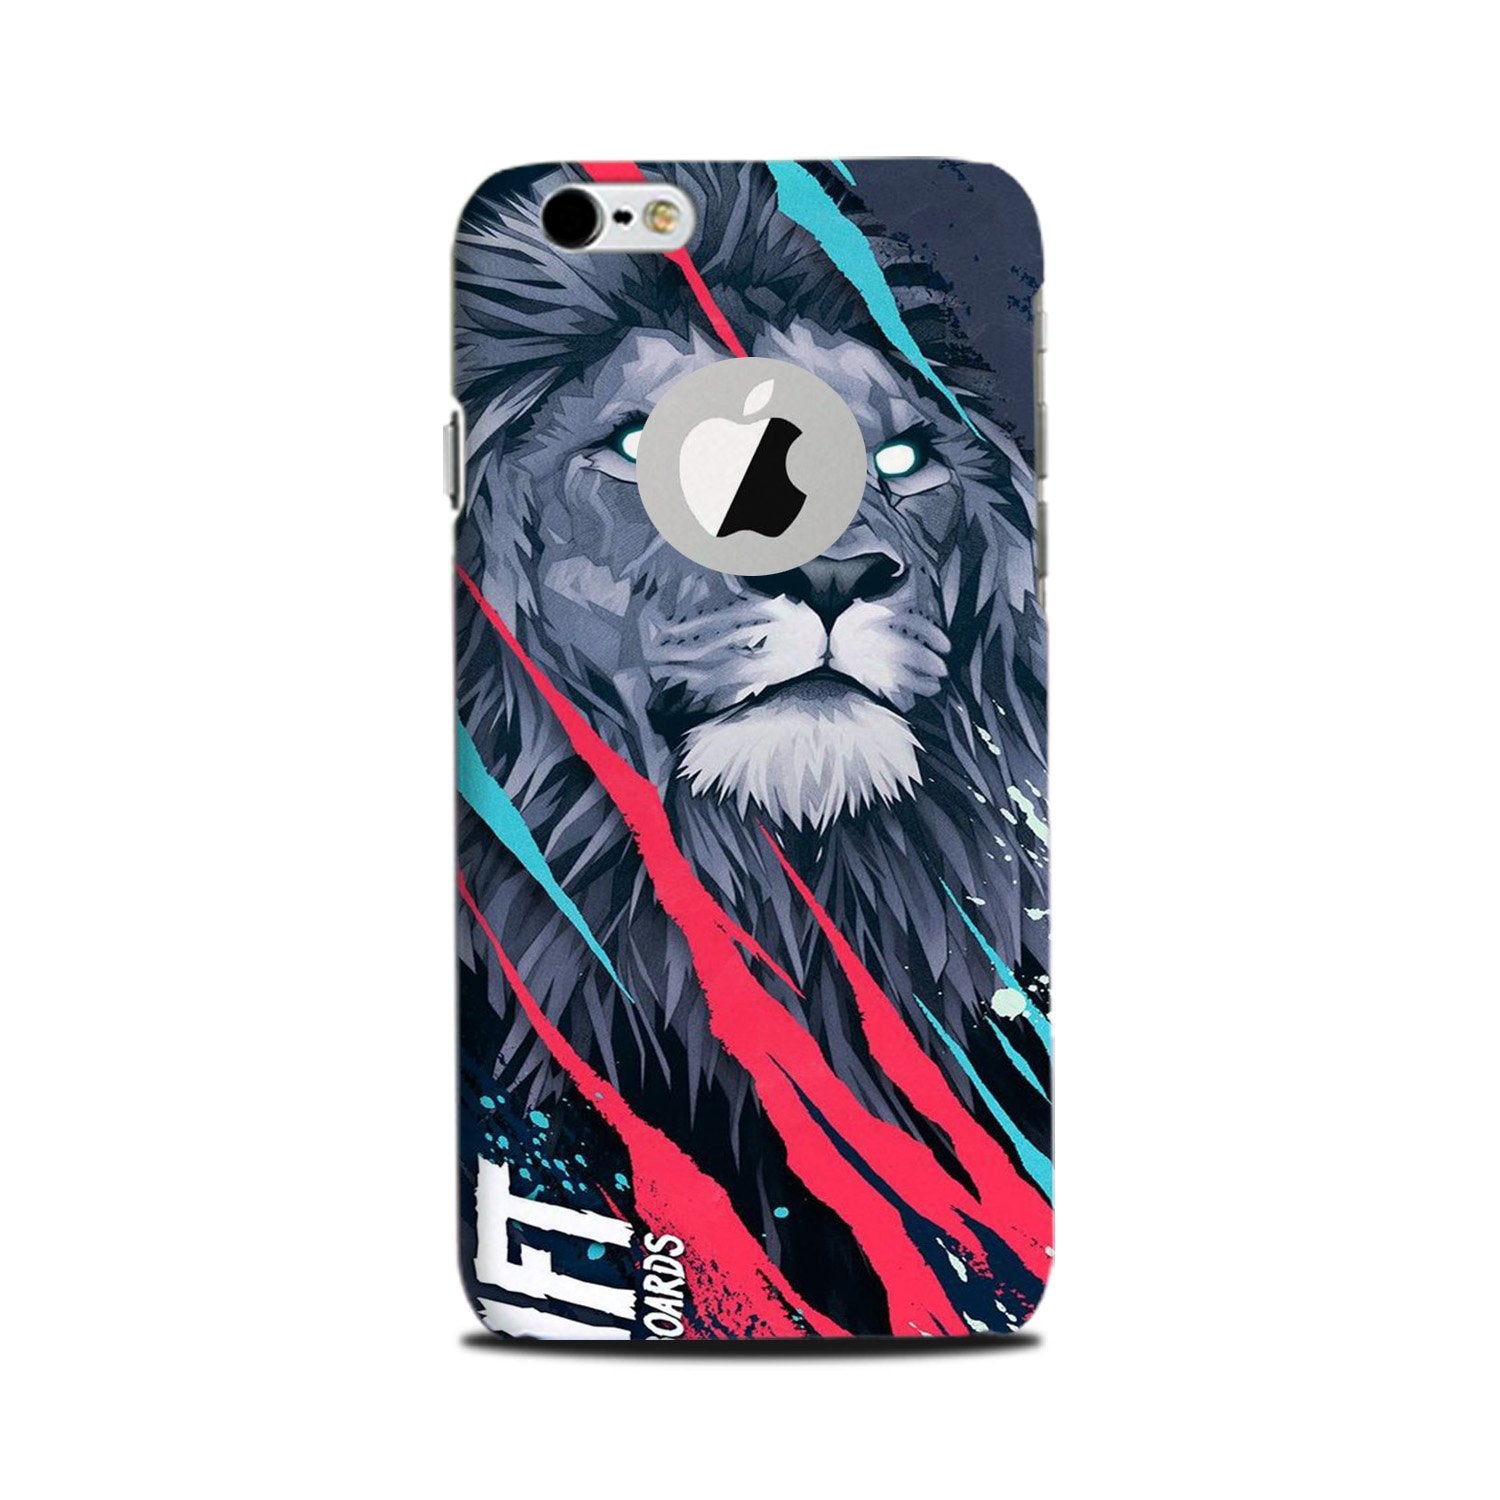 Lion Case for iPhone 6 Plus / 6s Plus logo cut(Design No. 278)